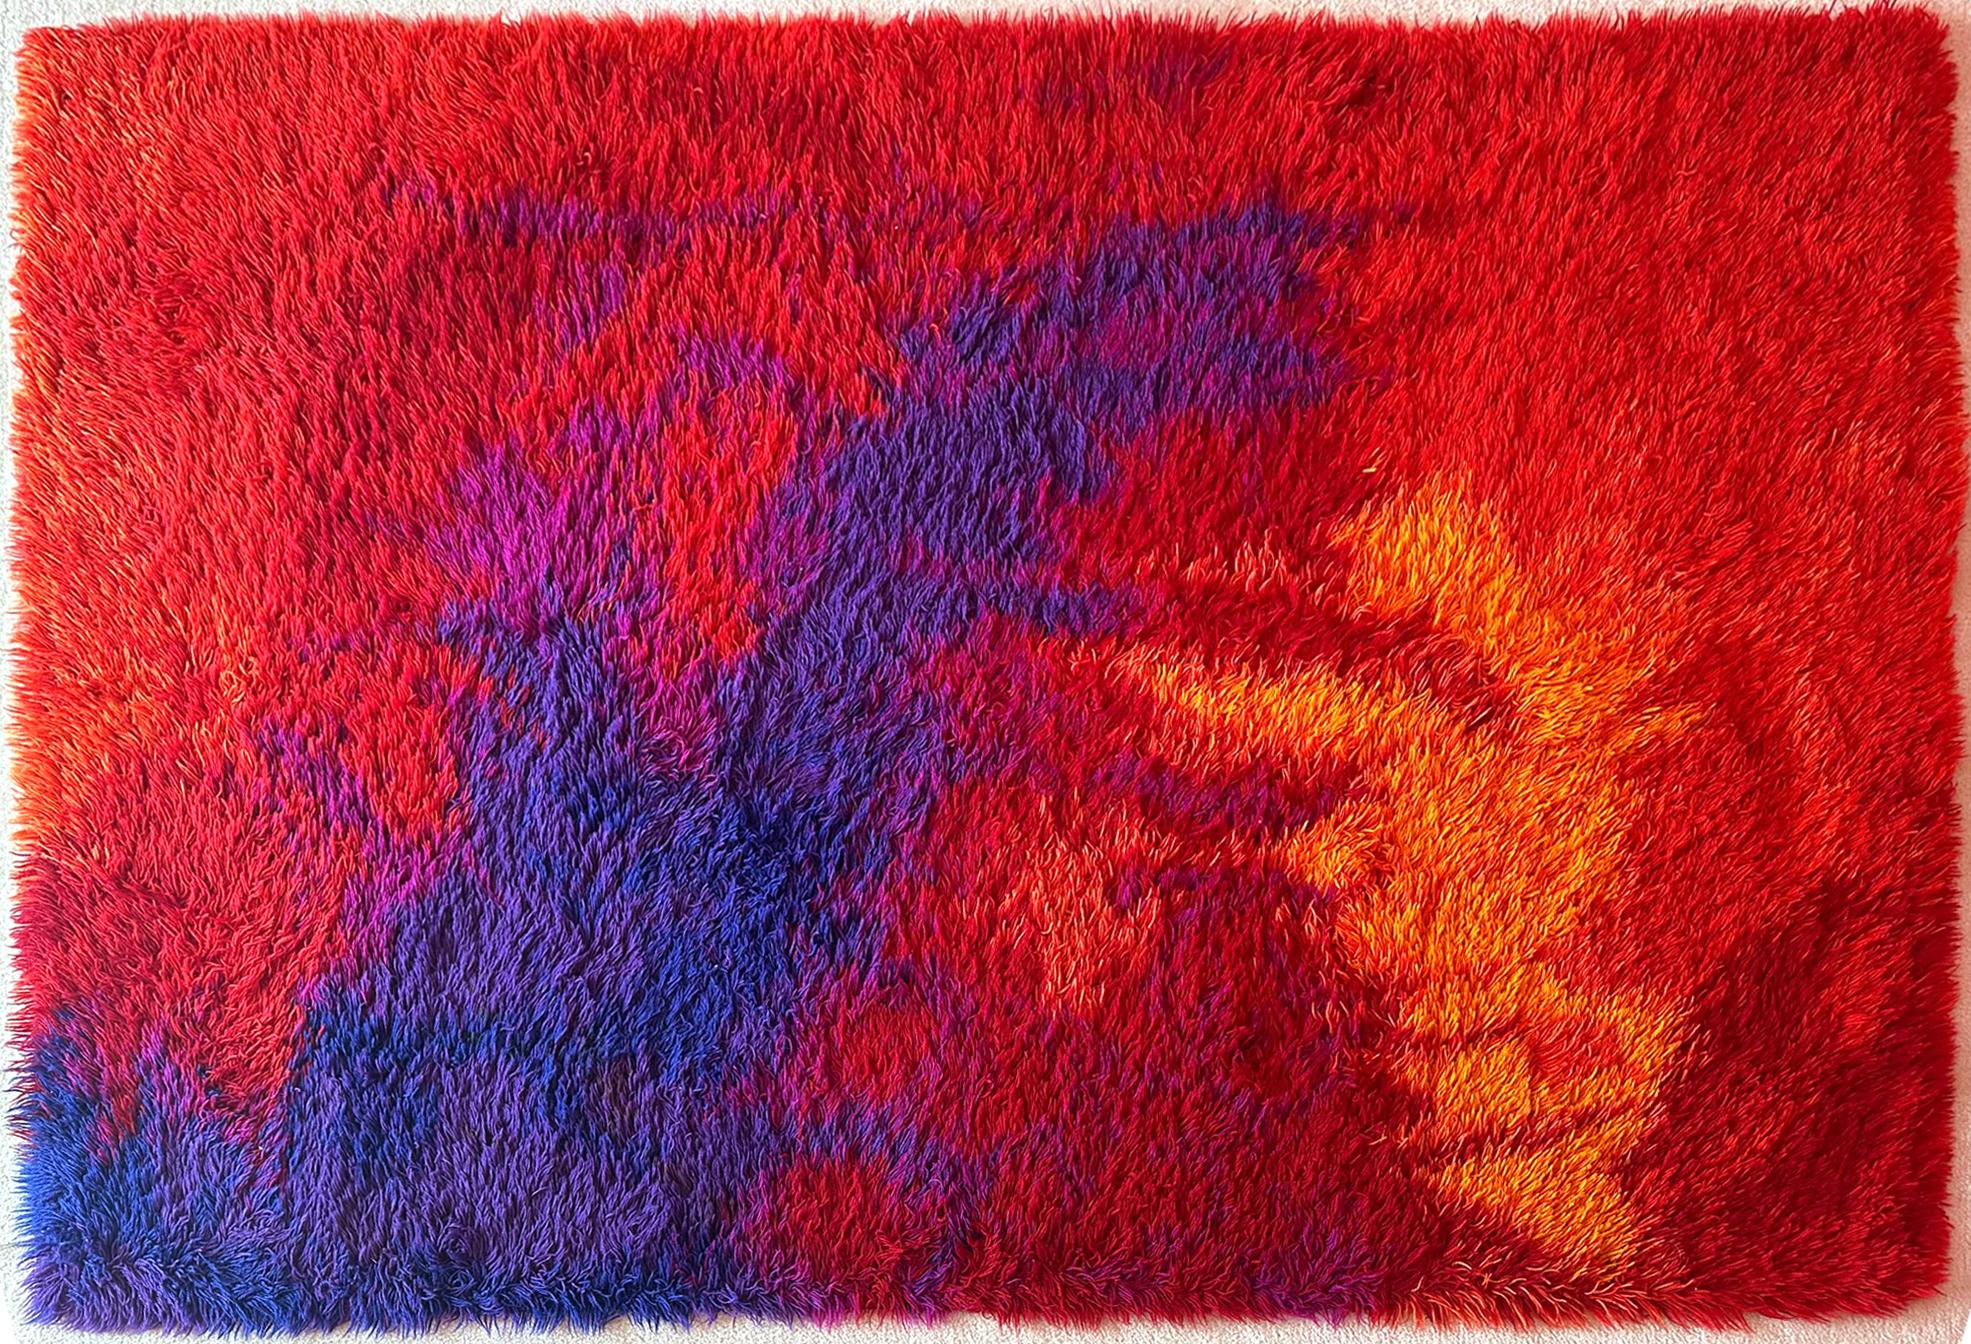 Ein dänischer Wollteppich von Unikataeppe aus Dänemark aus den 1960er Jahren. Der farbenfrohe Teppich hat lange zottelige Fasern und ist in sehr gutem Zustand. Auf einem Hintergrund aus gesprenkelten Rottönen in subtilen Schattierungen bilden